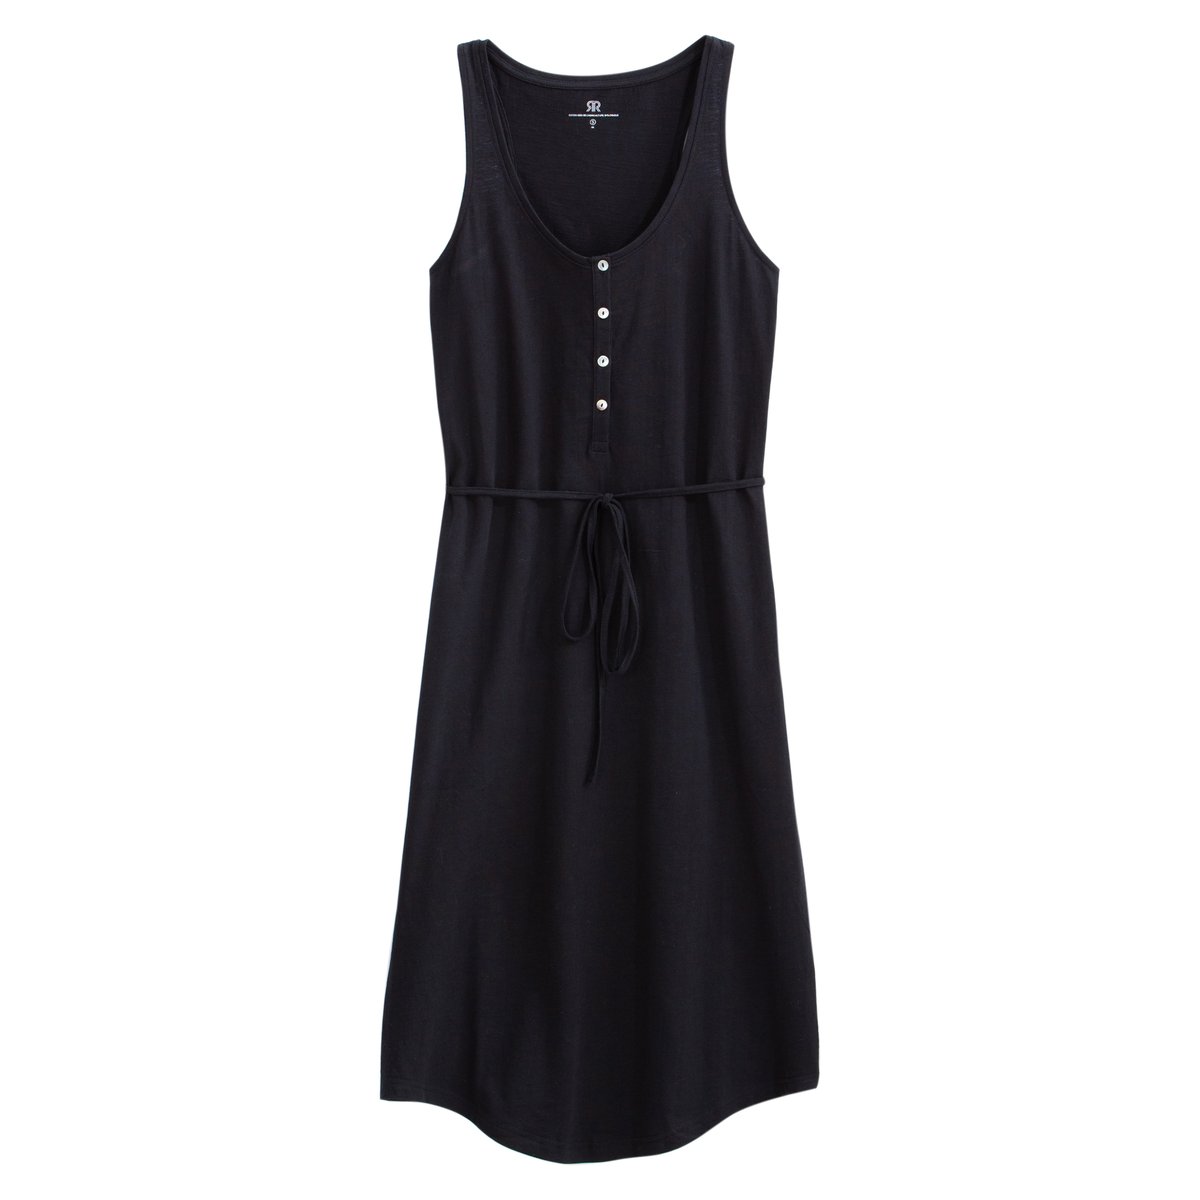 Платье La Redoute Без рукавов из трикотажа M черный, размер M - фото 5